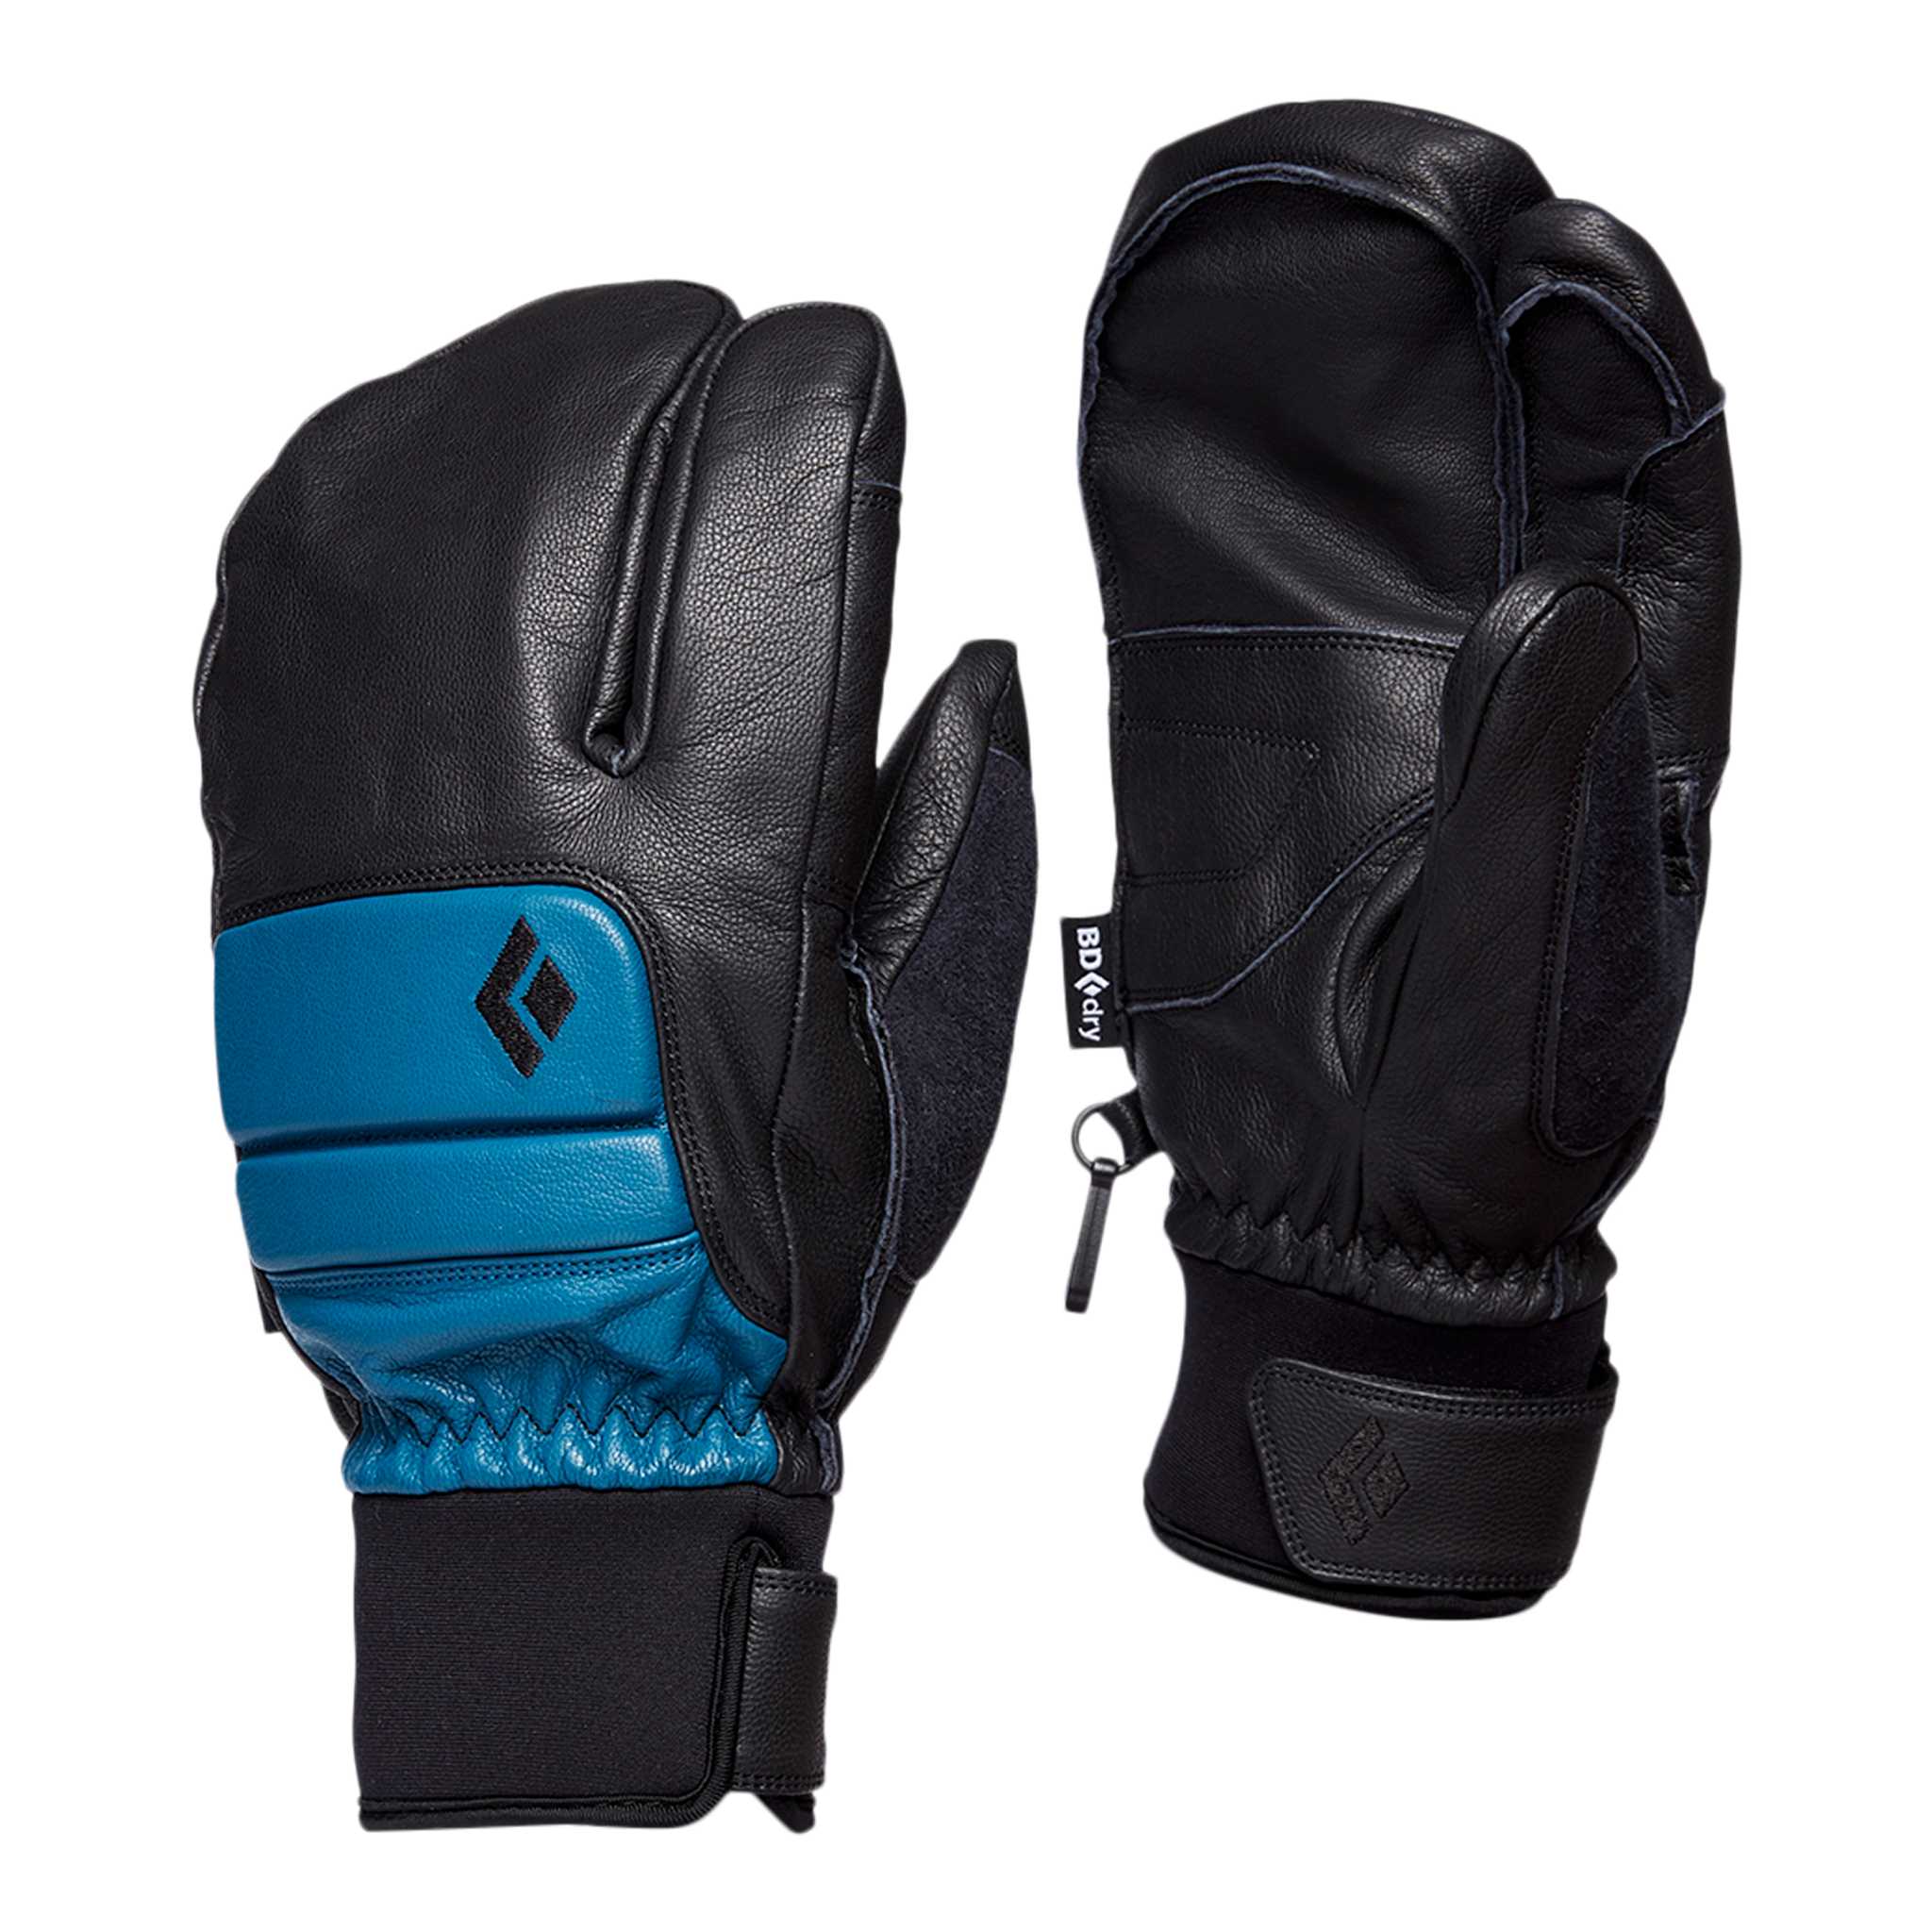 Black Diamond Equipment Men's Spark Finger Gloves, XL Astral Blue